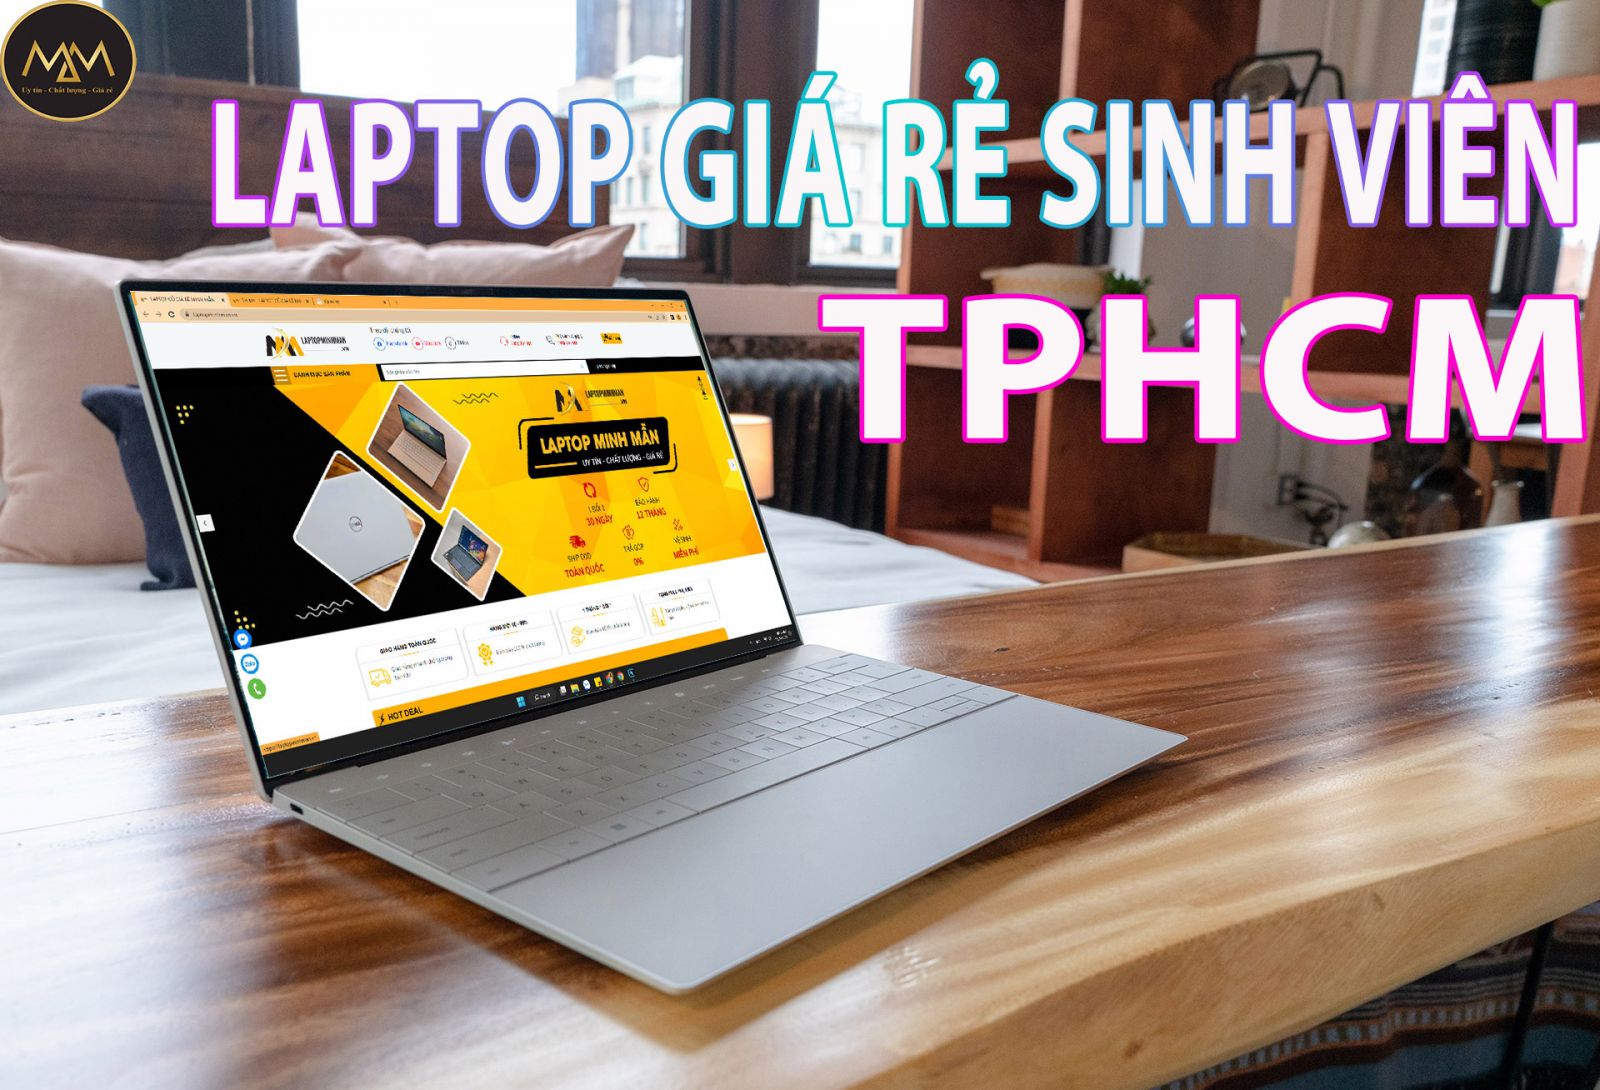 Laptop-giá-rẻ-sinh-viên-TPHCM